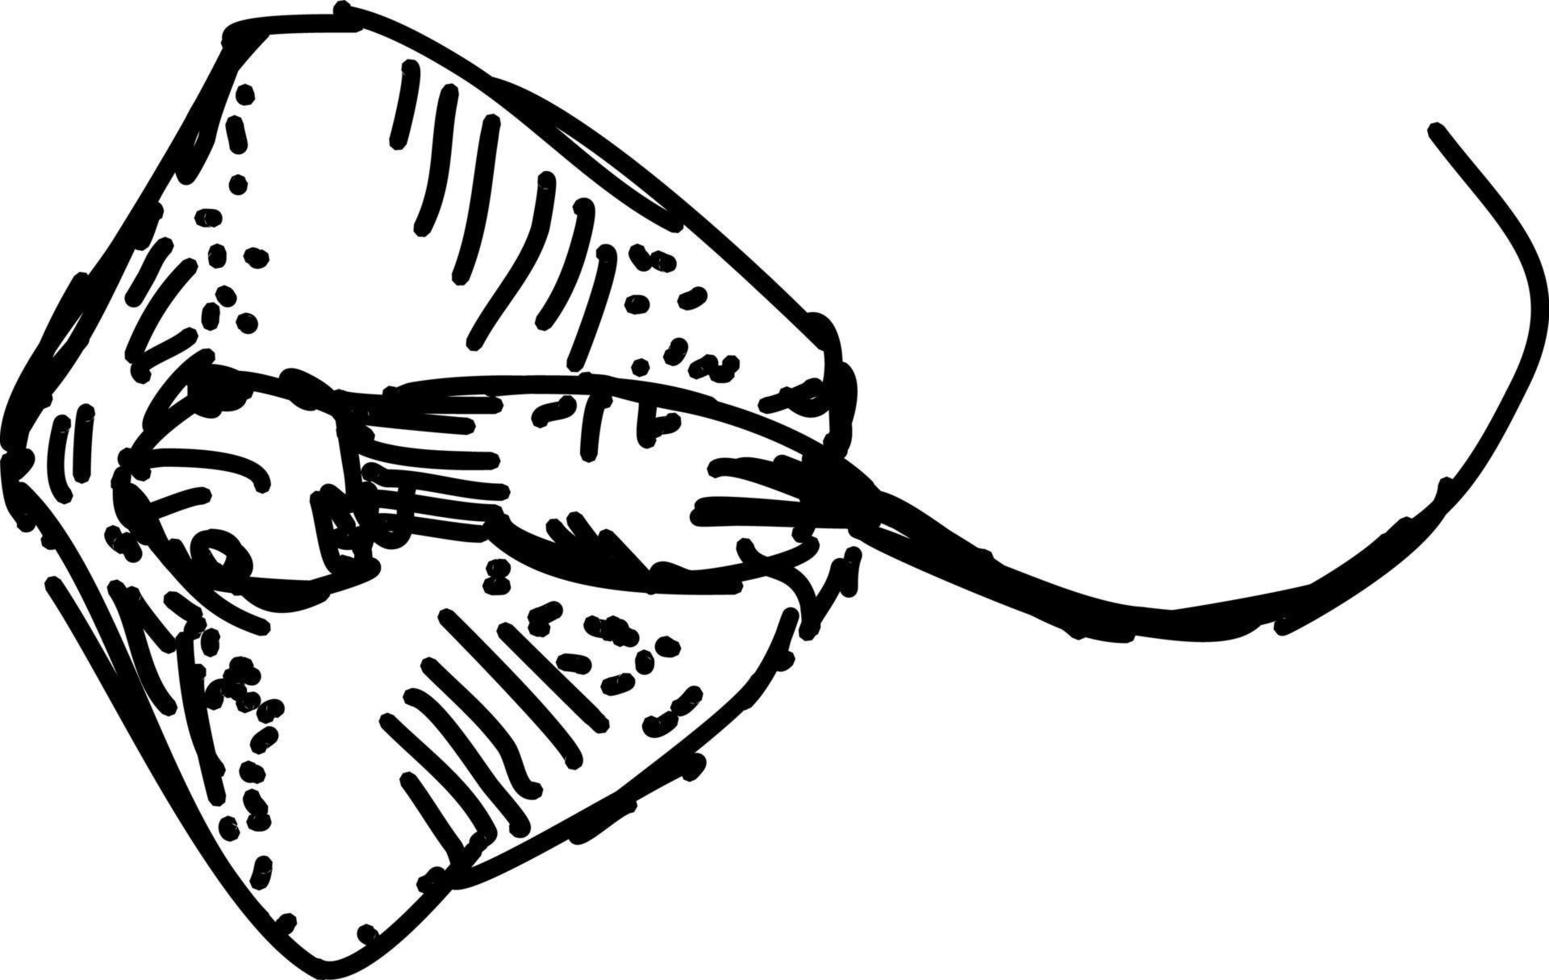 Fischzeichnung, Illustration, Vektor auf weißem Hintergrund.